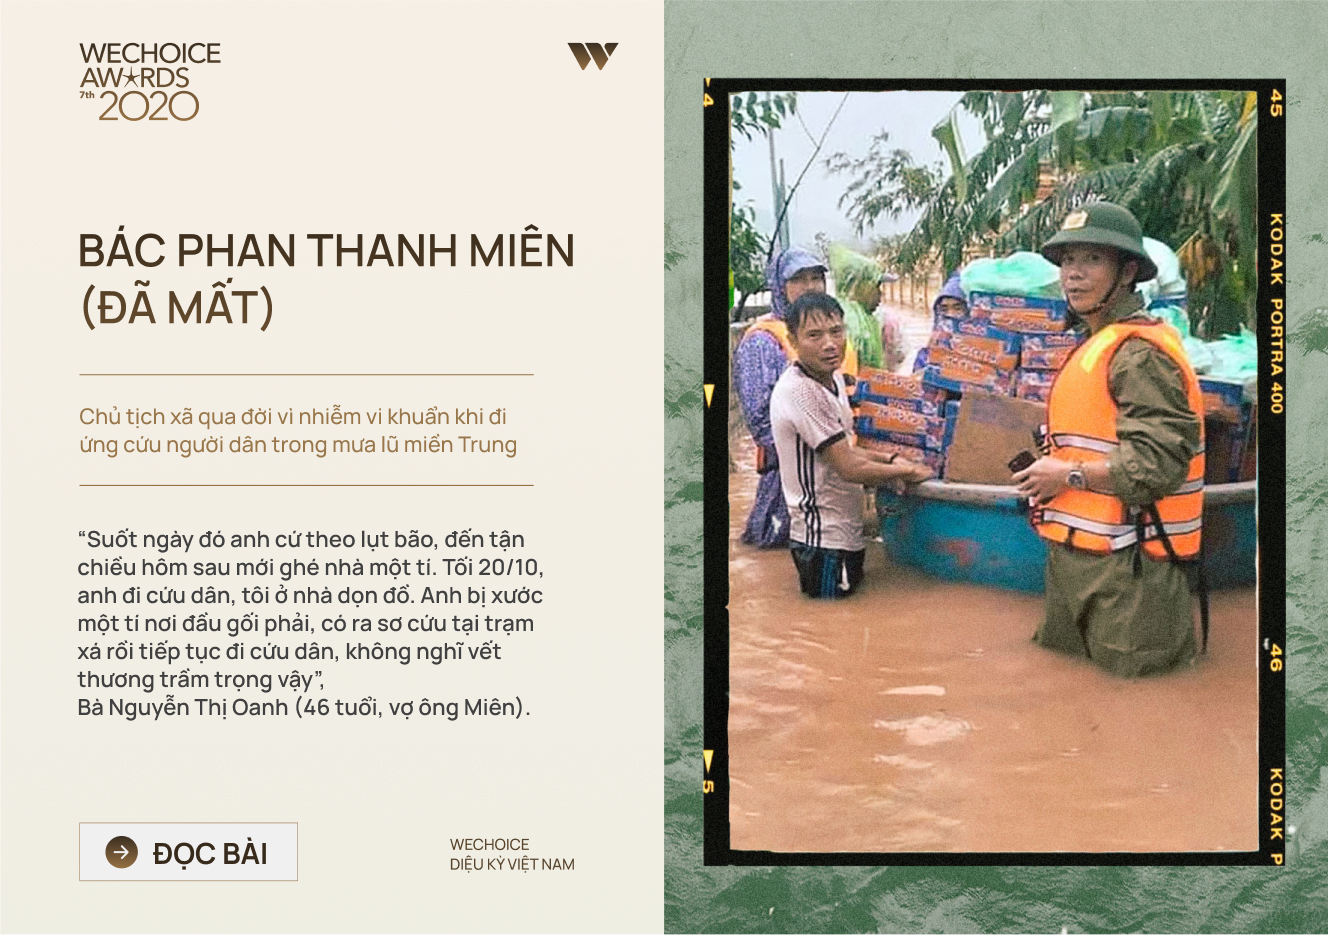 20 đề cử nhân vật truyền cảm hứng của WeChoice Awards 2020: Những câu chuyện tạo nên Diệu kỳ Việt Nam - Ảnh 17.